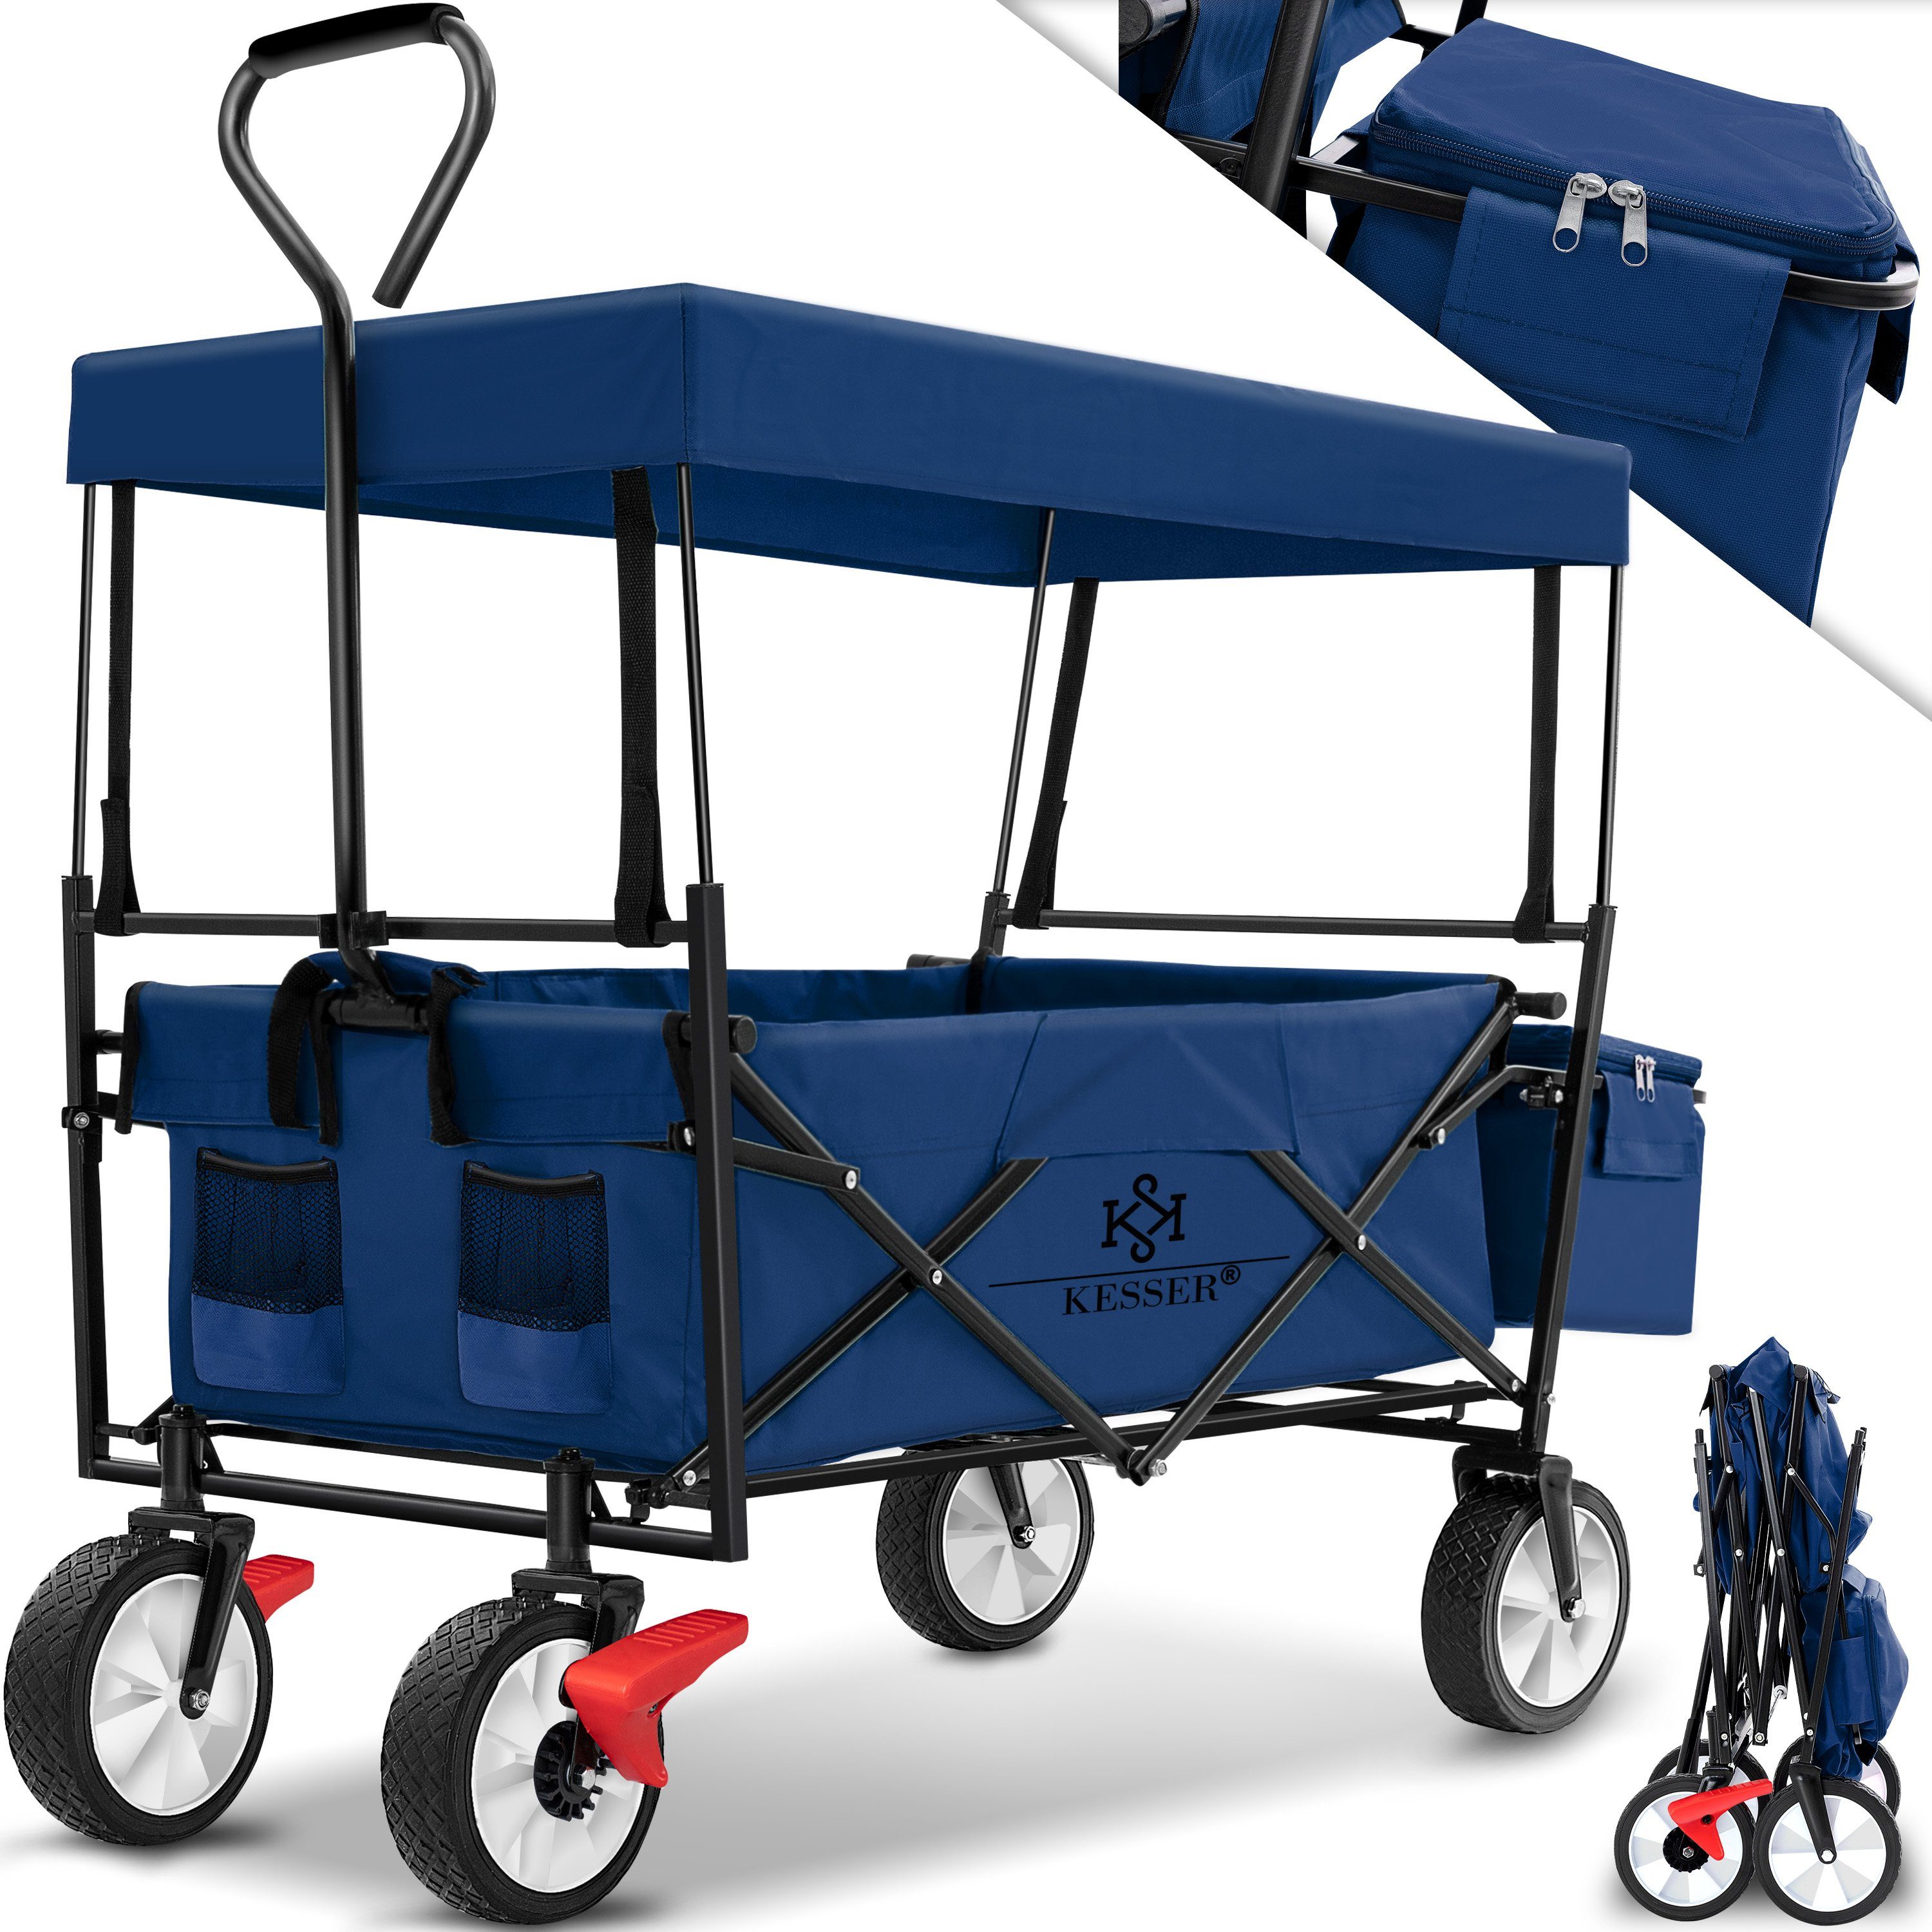 Dach faltbar blau/navy Bollerwagen Transportkarre mit Handwagen Geräte Bollerwagen, KESSER